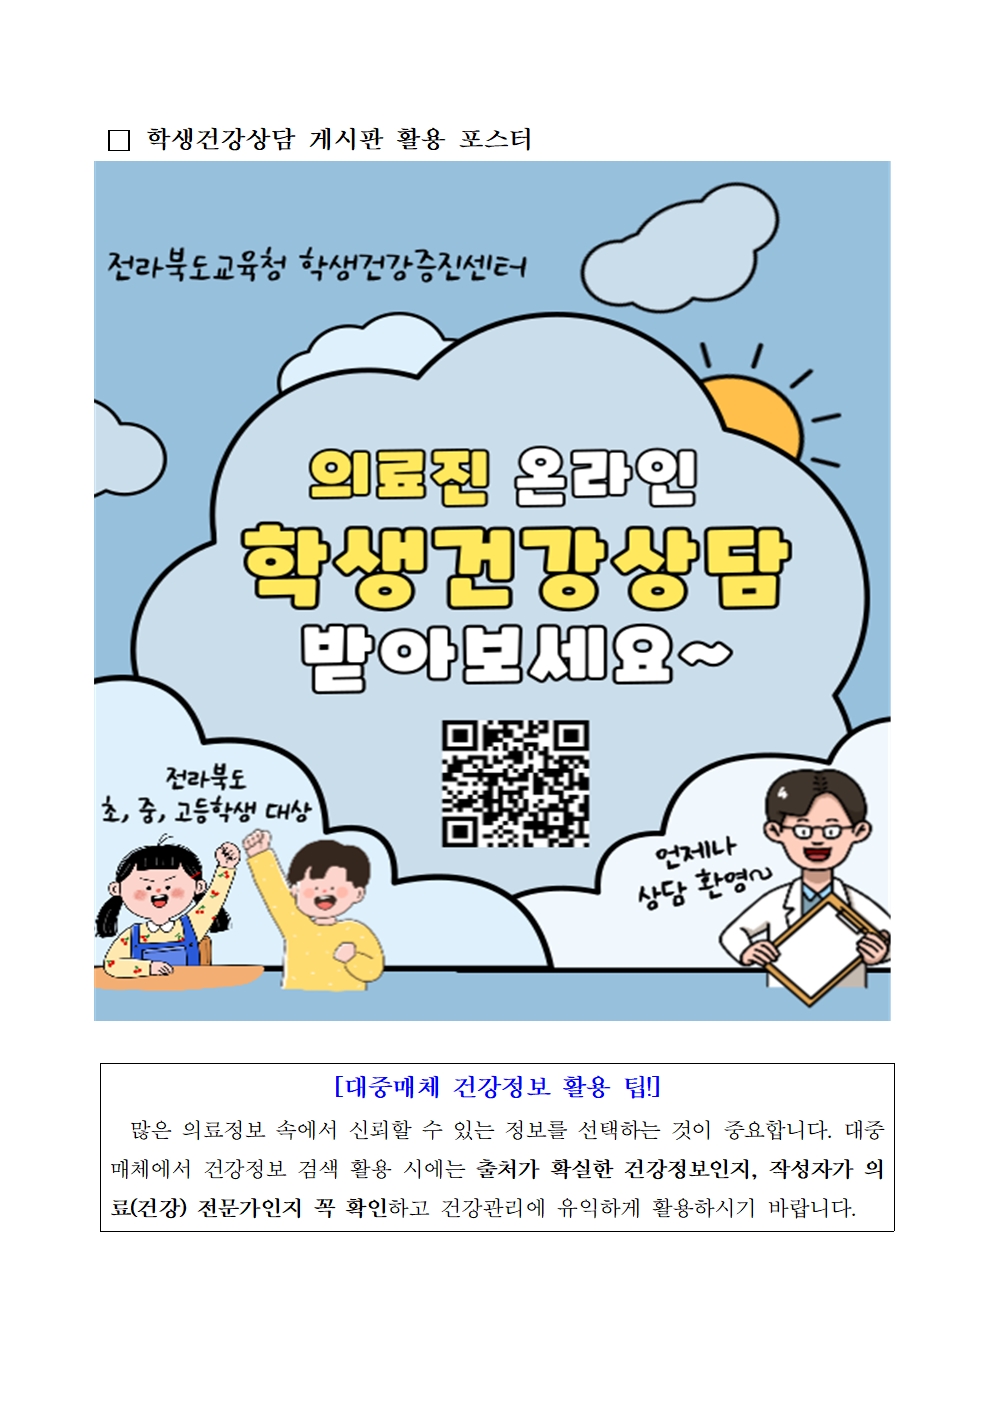 리로-4.25-학생건강상담(온라인) 게시판 이용방법 안내002